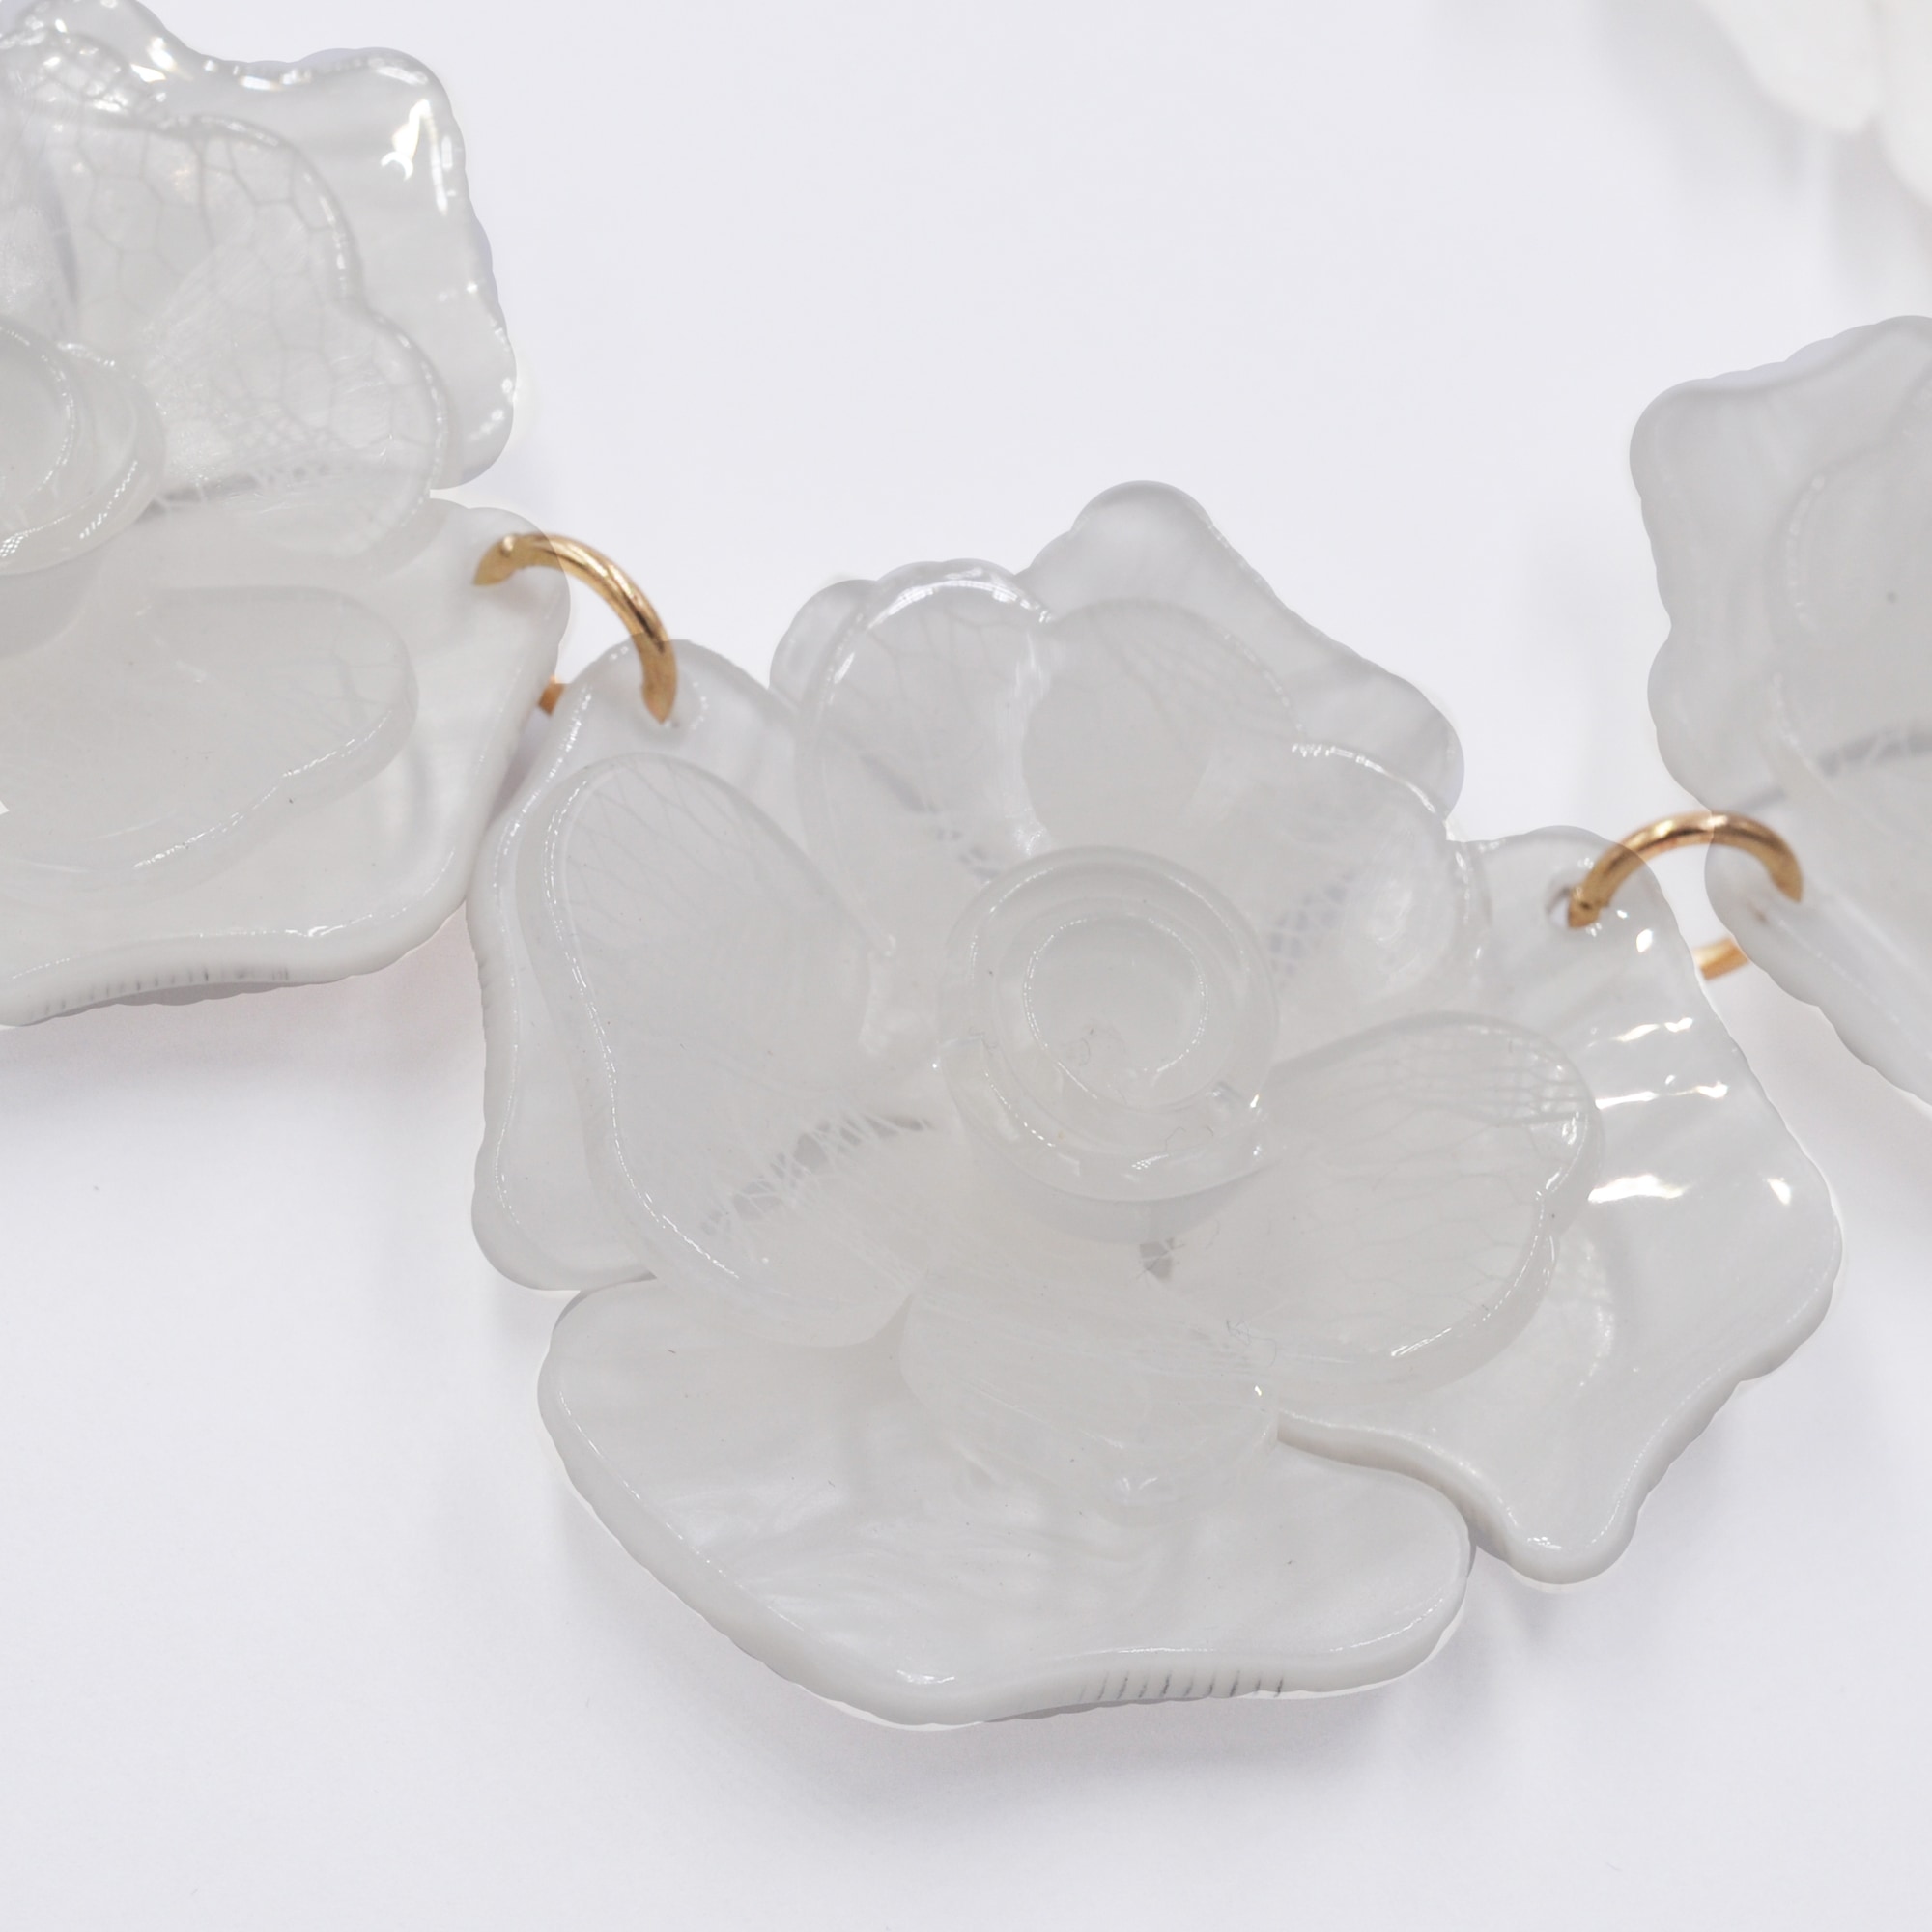 Steuer Collierkettchen »Blütencollier in der Farbe weiß/perlmutt«